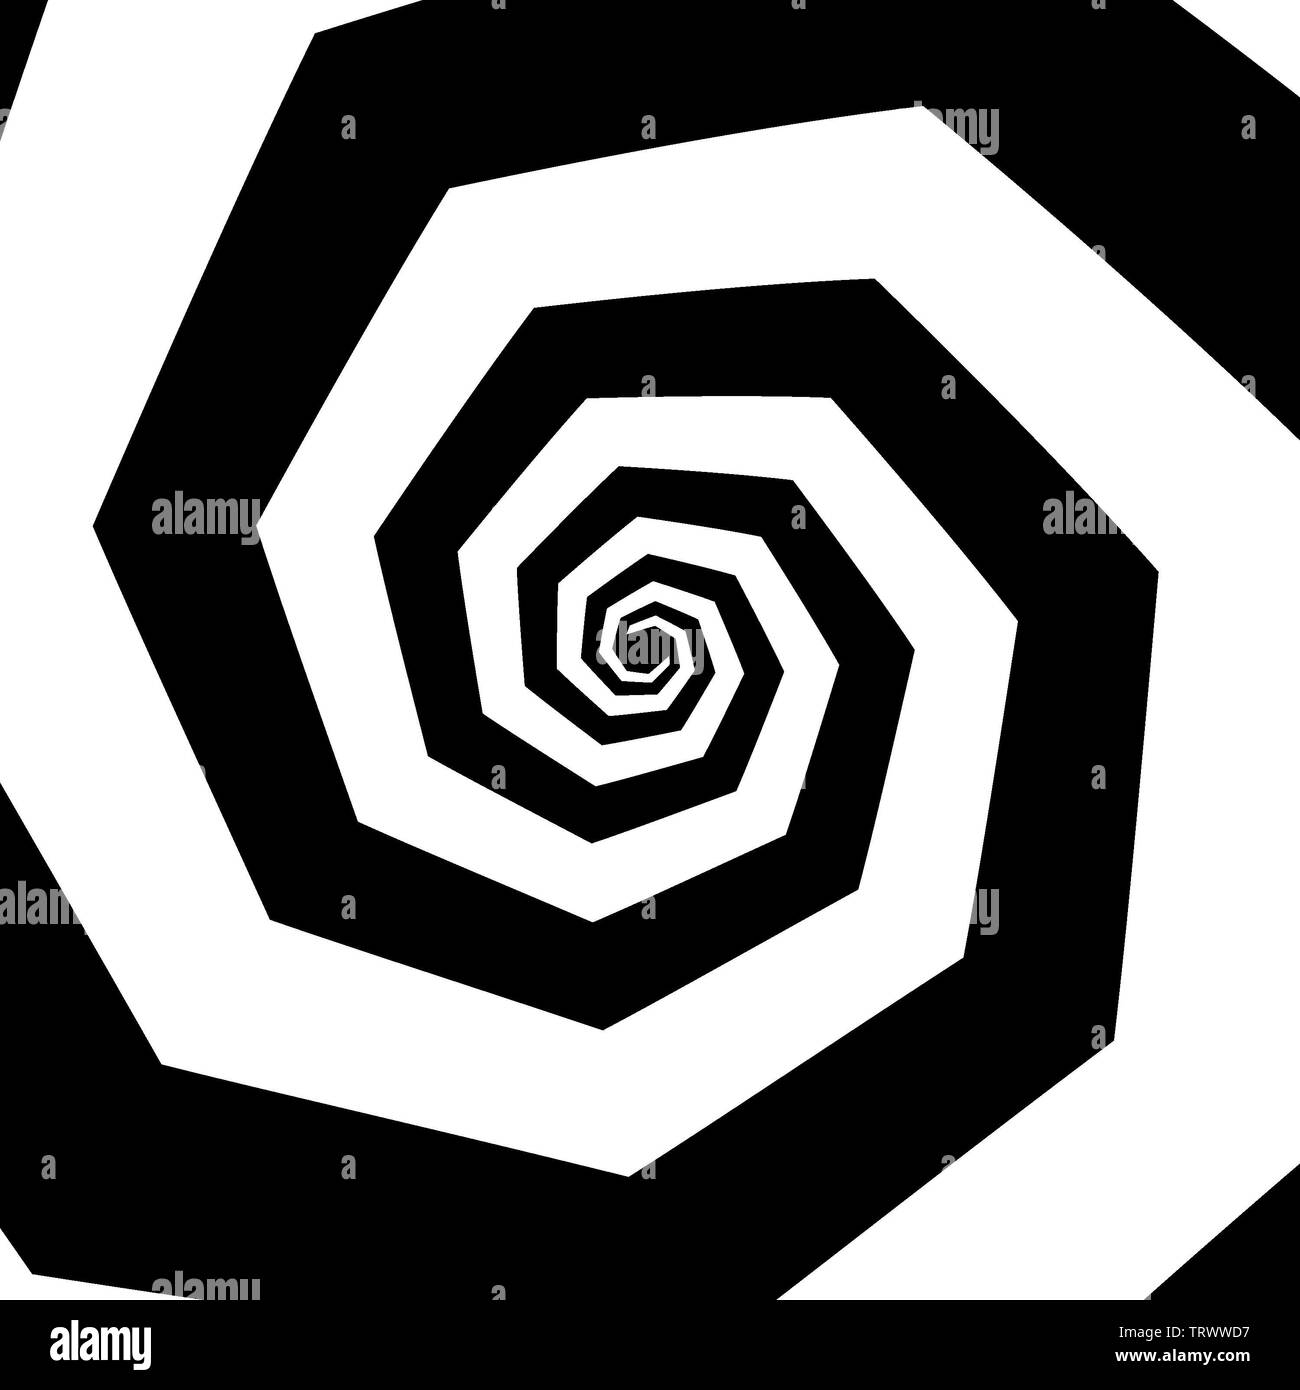 Une image créée à l'aide de l'informatique graphique. C'est une photo d'un objet mathématique appelé une fractale, créé à l'aide de nombres complexes. Banque D'Images